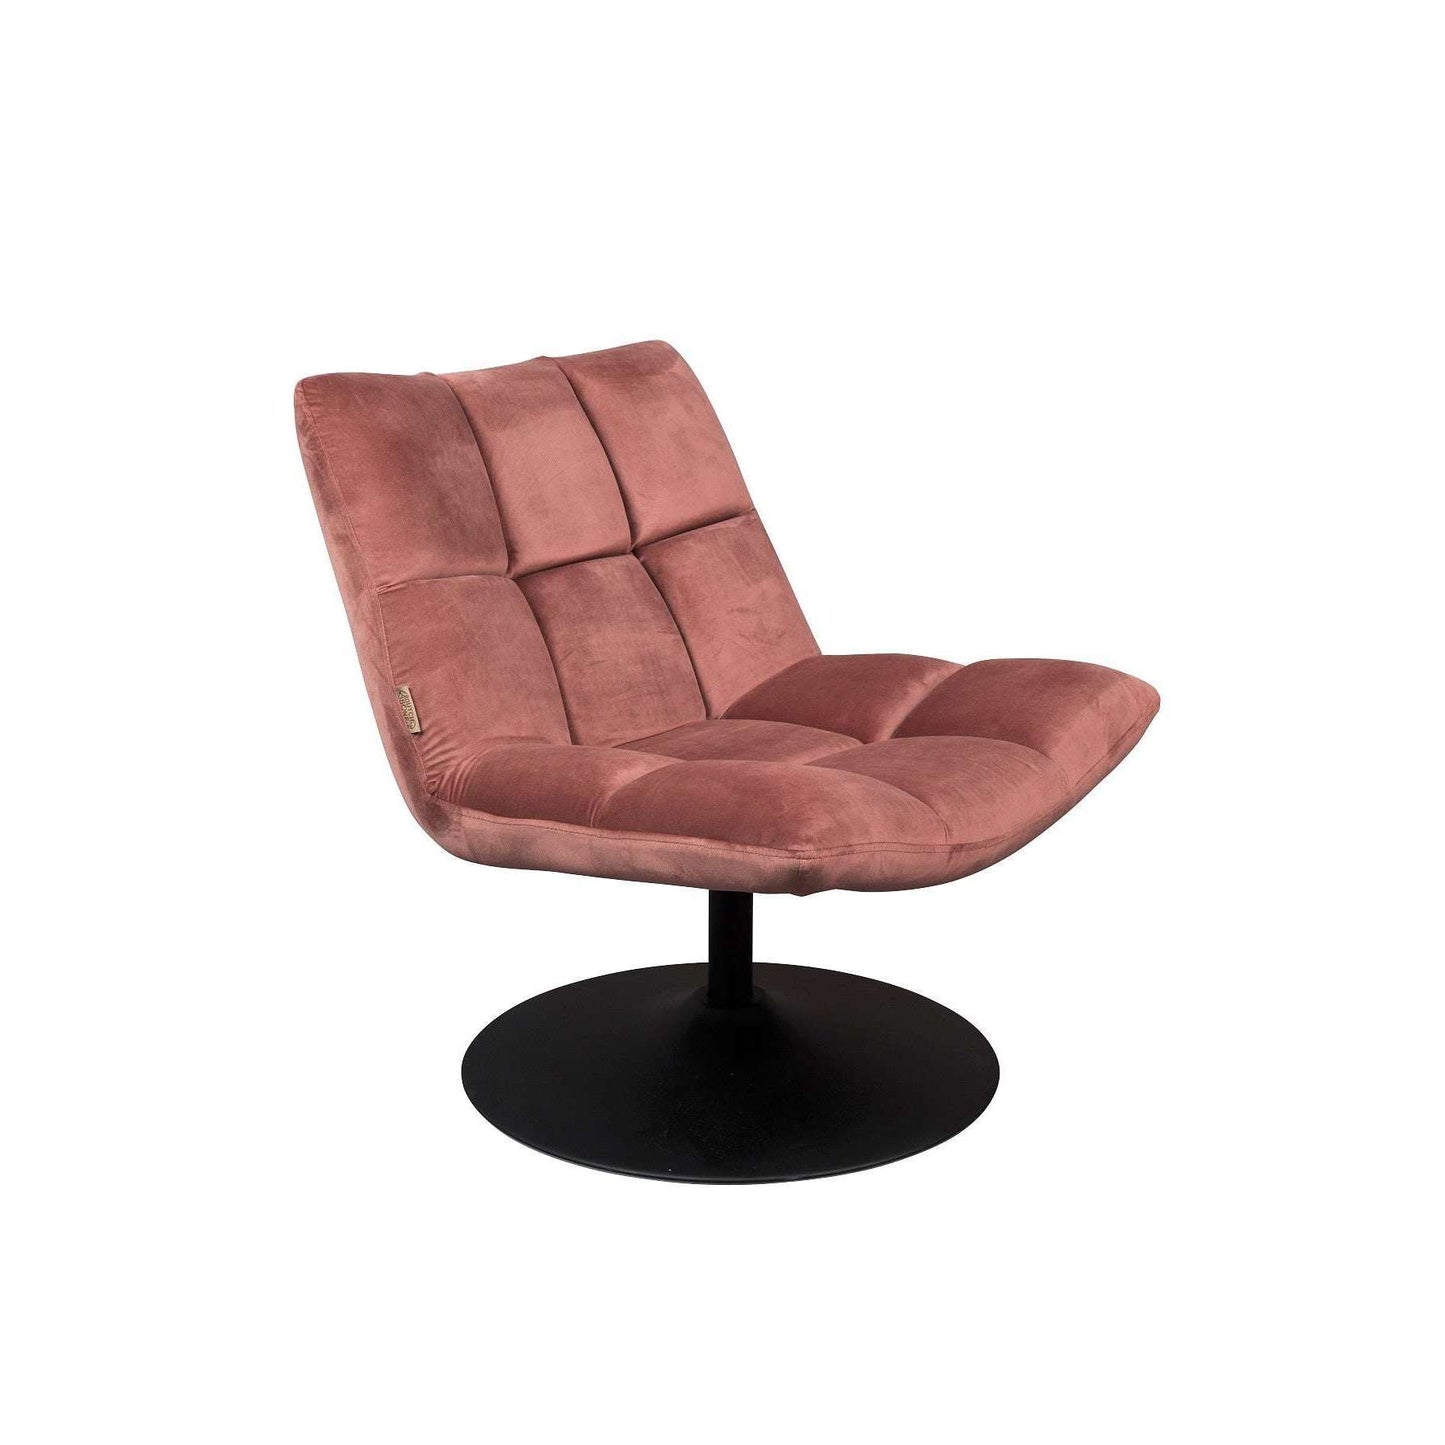 Staat medeklinker Vervelend Dutchbone fauteuil bar velvet oud roze 81 x 66 x 78 cm – Selinni